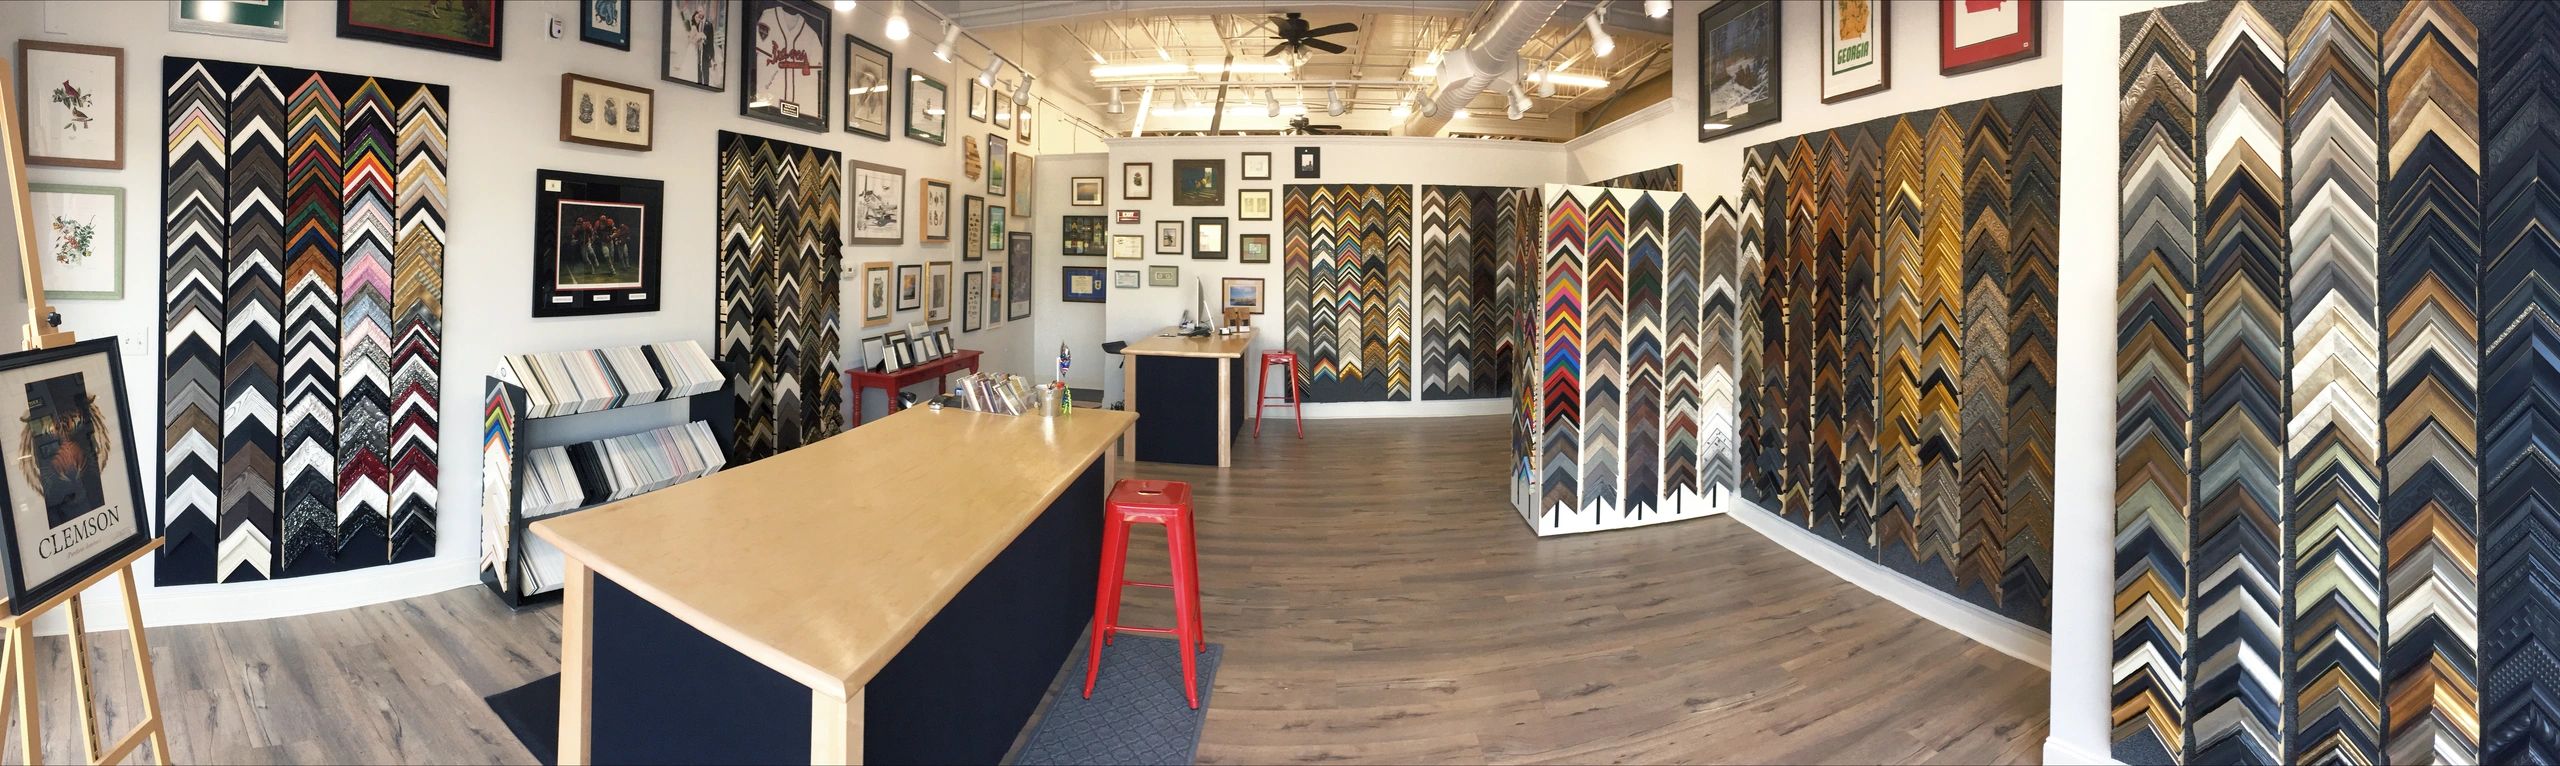 Georgia Frame Shop